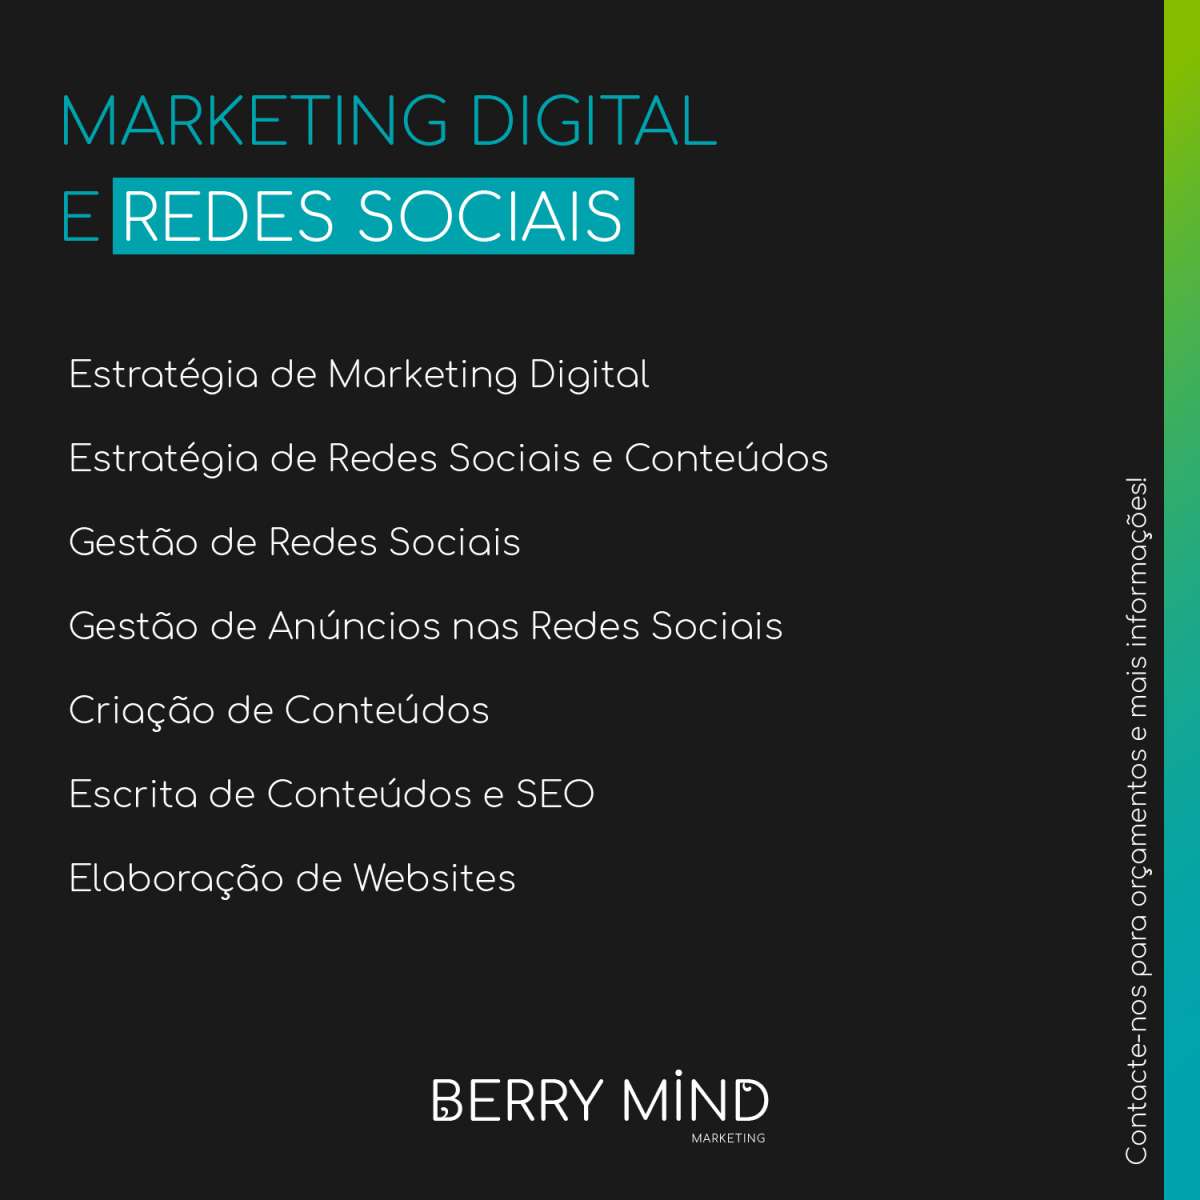 Berry Mind Marketing - Vila Franca de Xira - Marketing